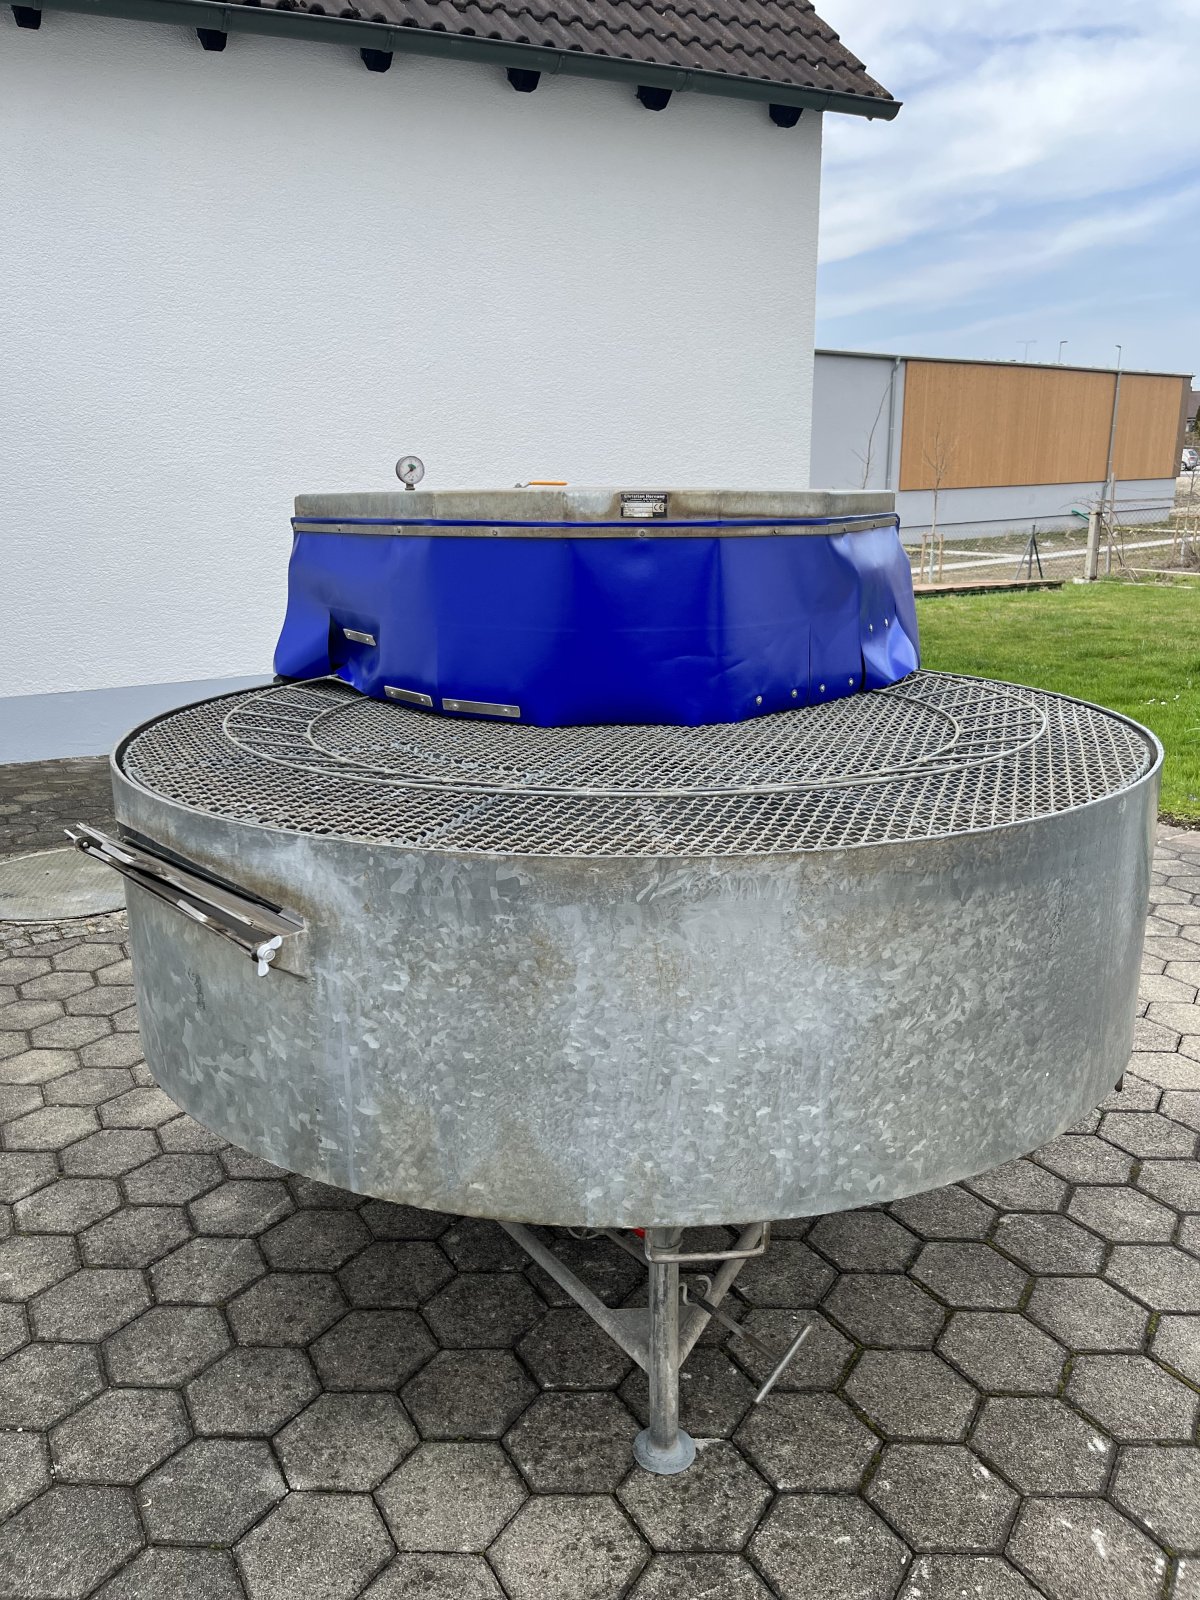 Waschmaschine типа Hornung Gemüsewascher, Gebrauchtmaschine в Friedberg (Фотография 2)